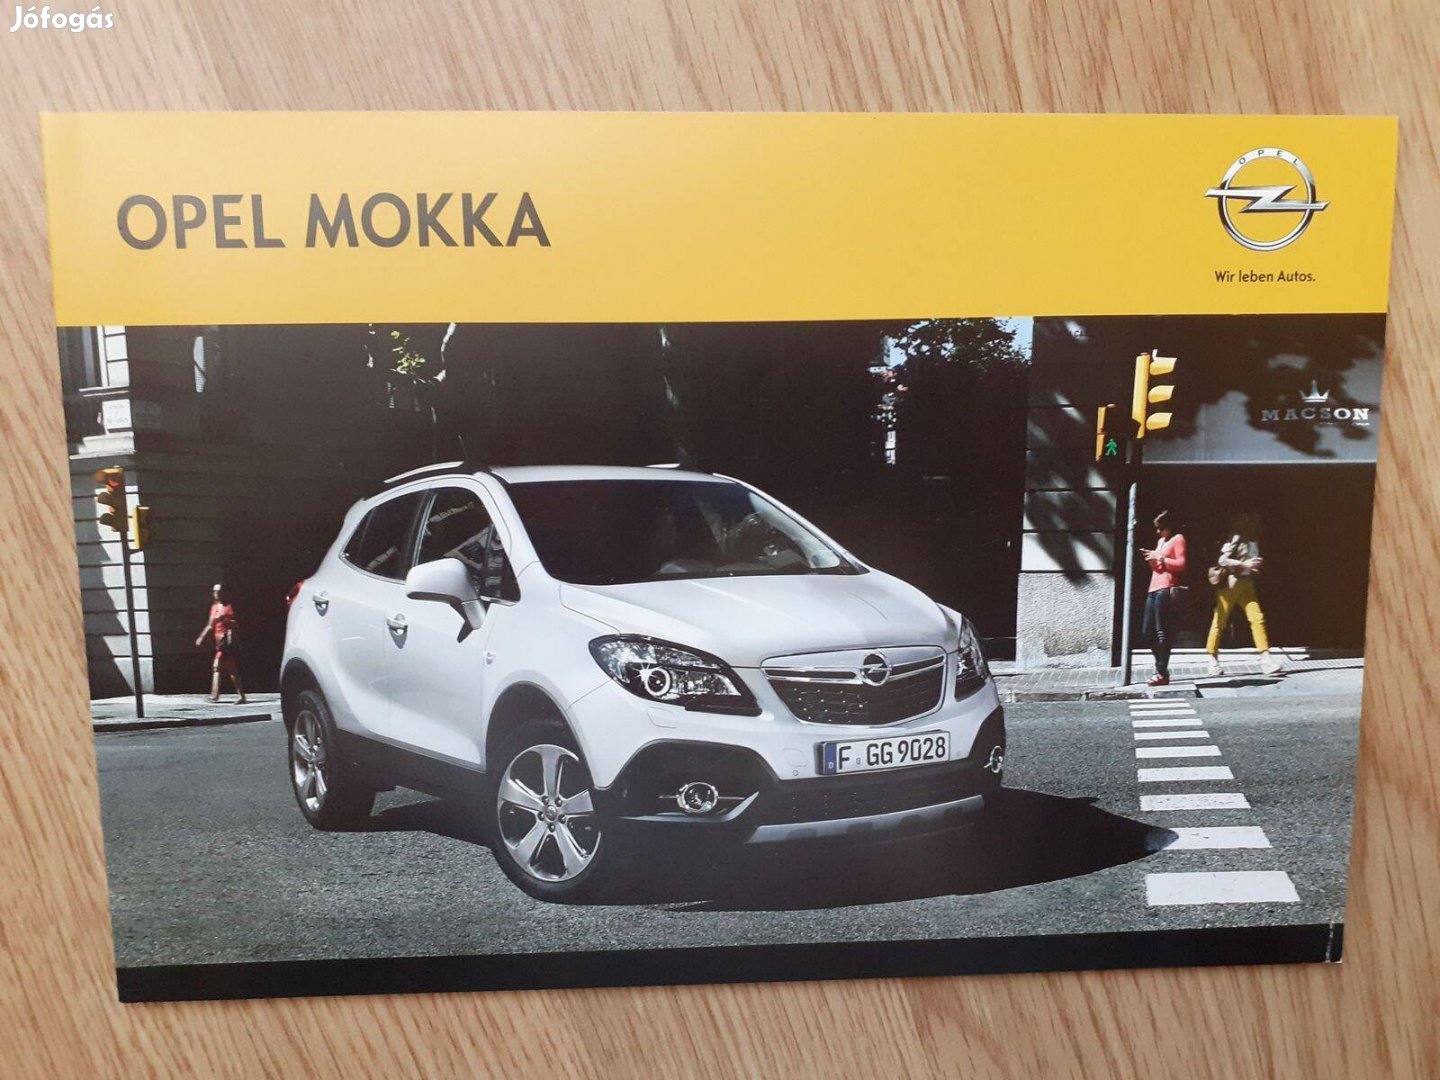 Opel Mokka prospektus - 2012, magyar nyelvű